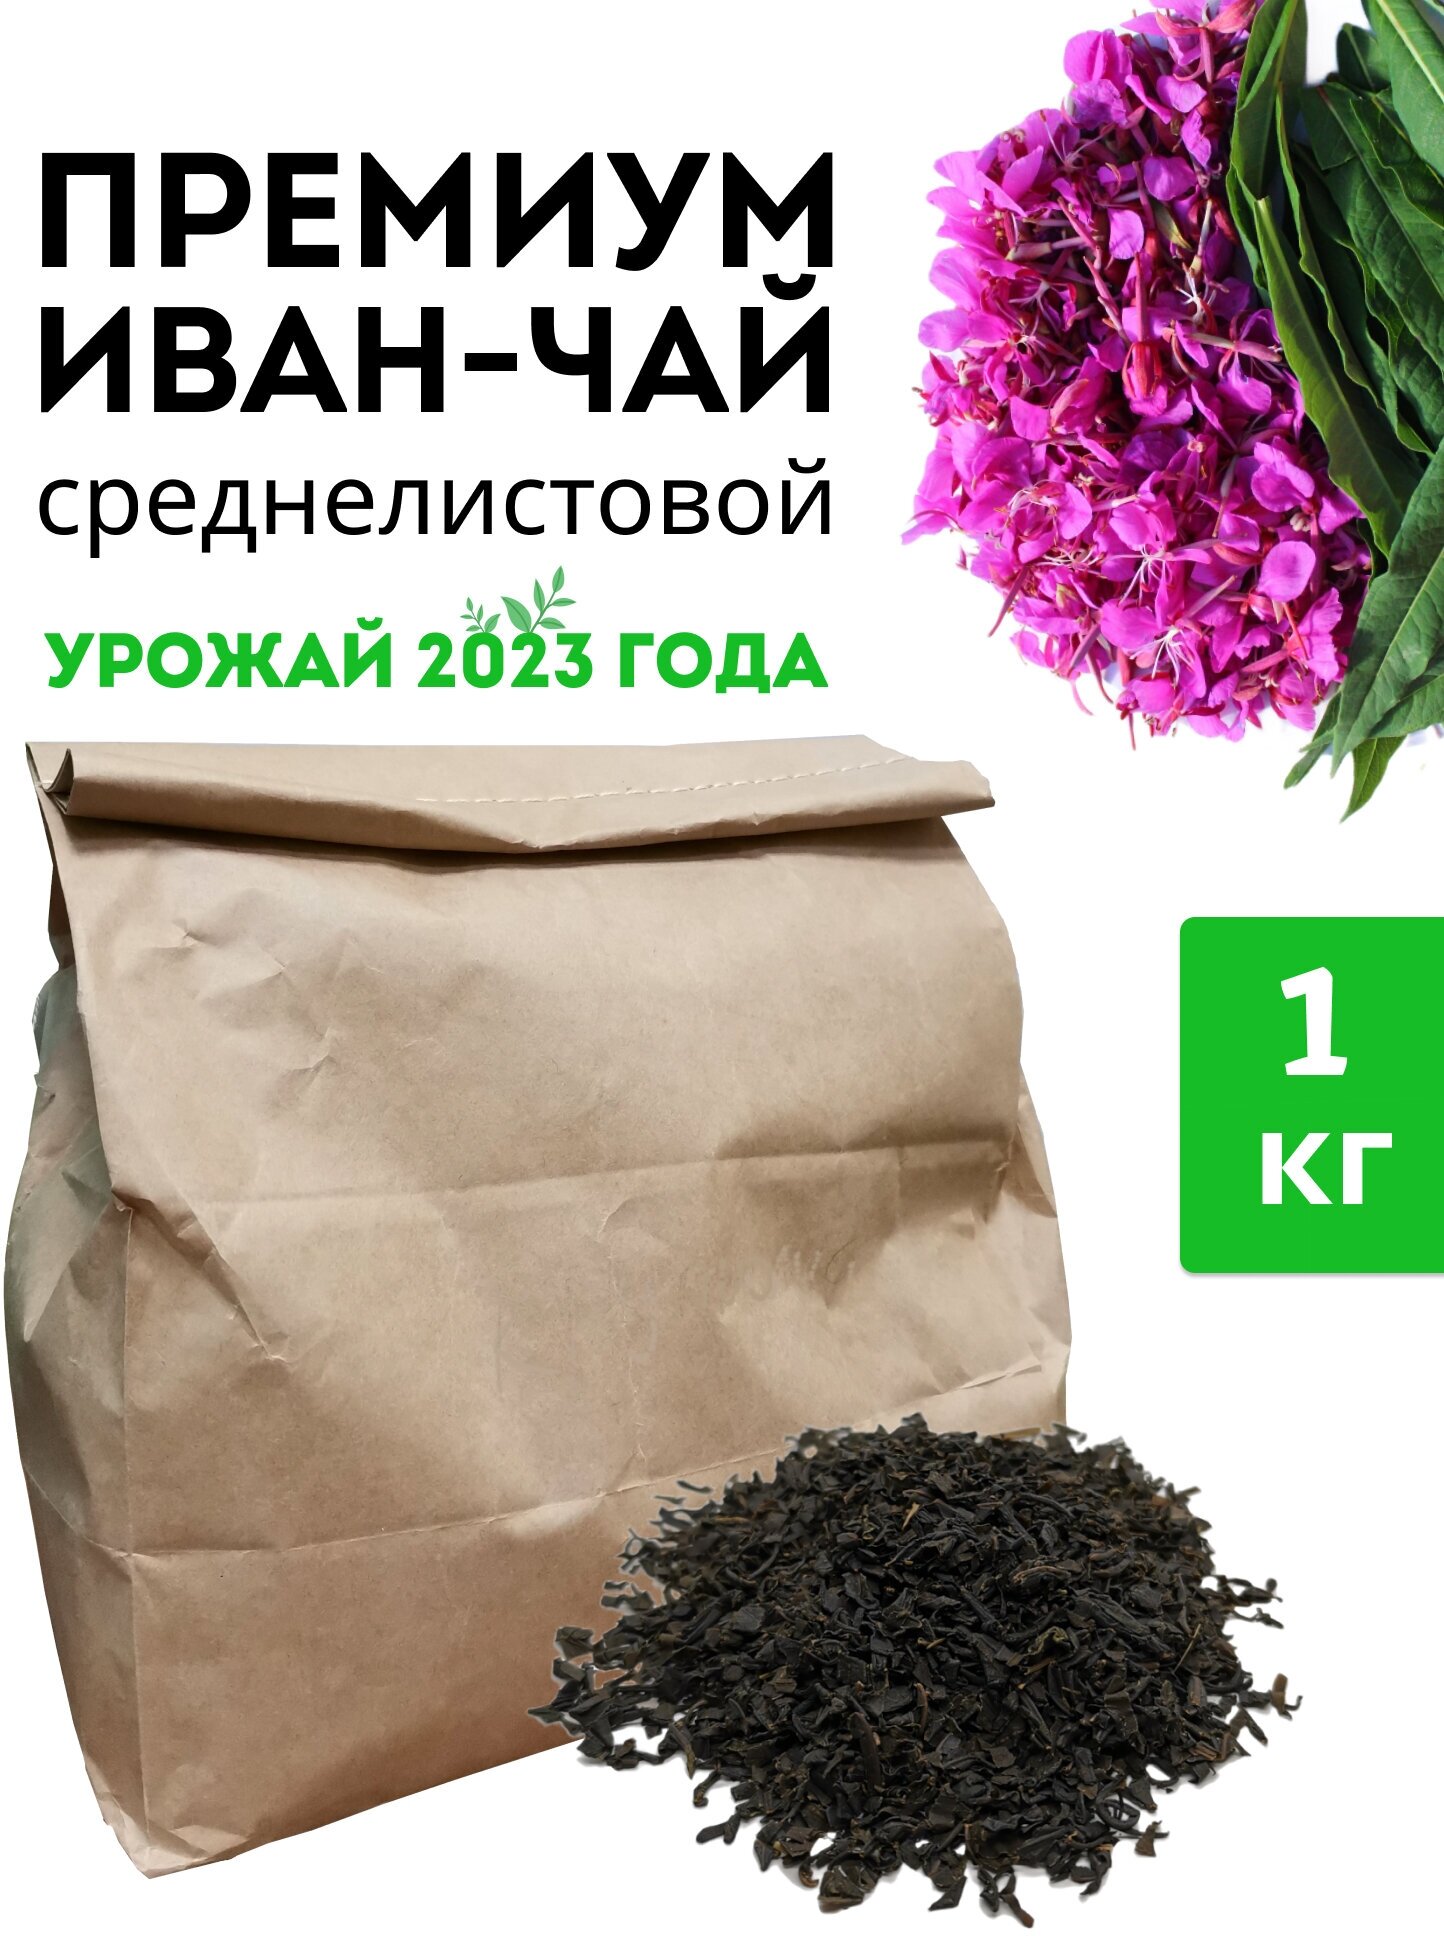 Чайный напиток Уральский Иван-Чай, премиум, 1 КГ, без добавок, среднелистовой